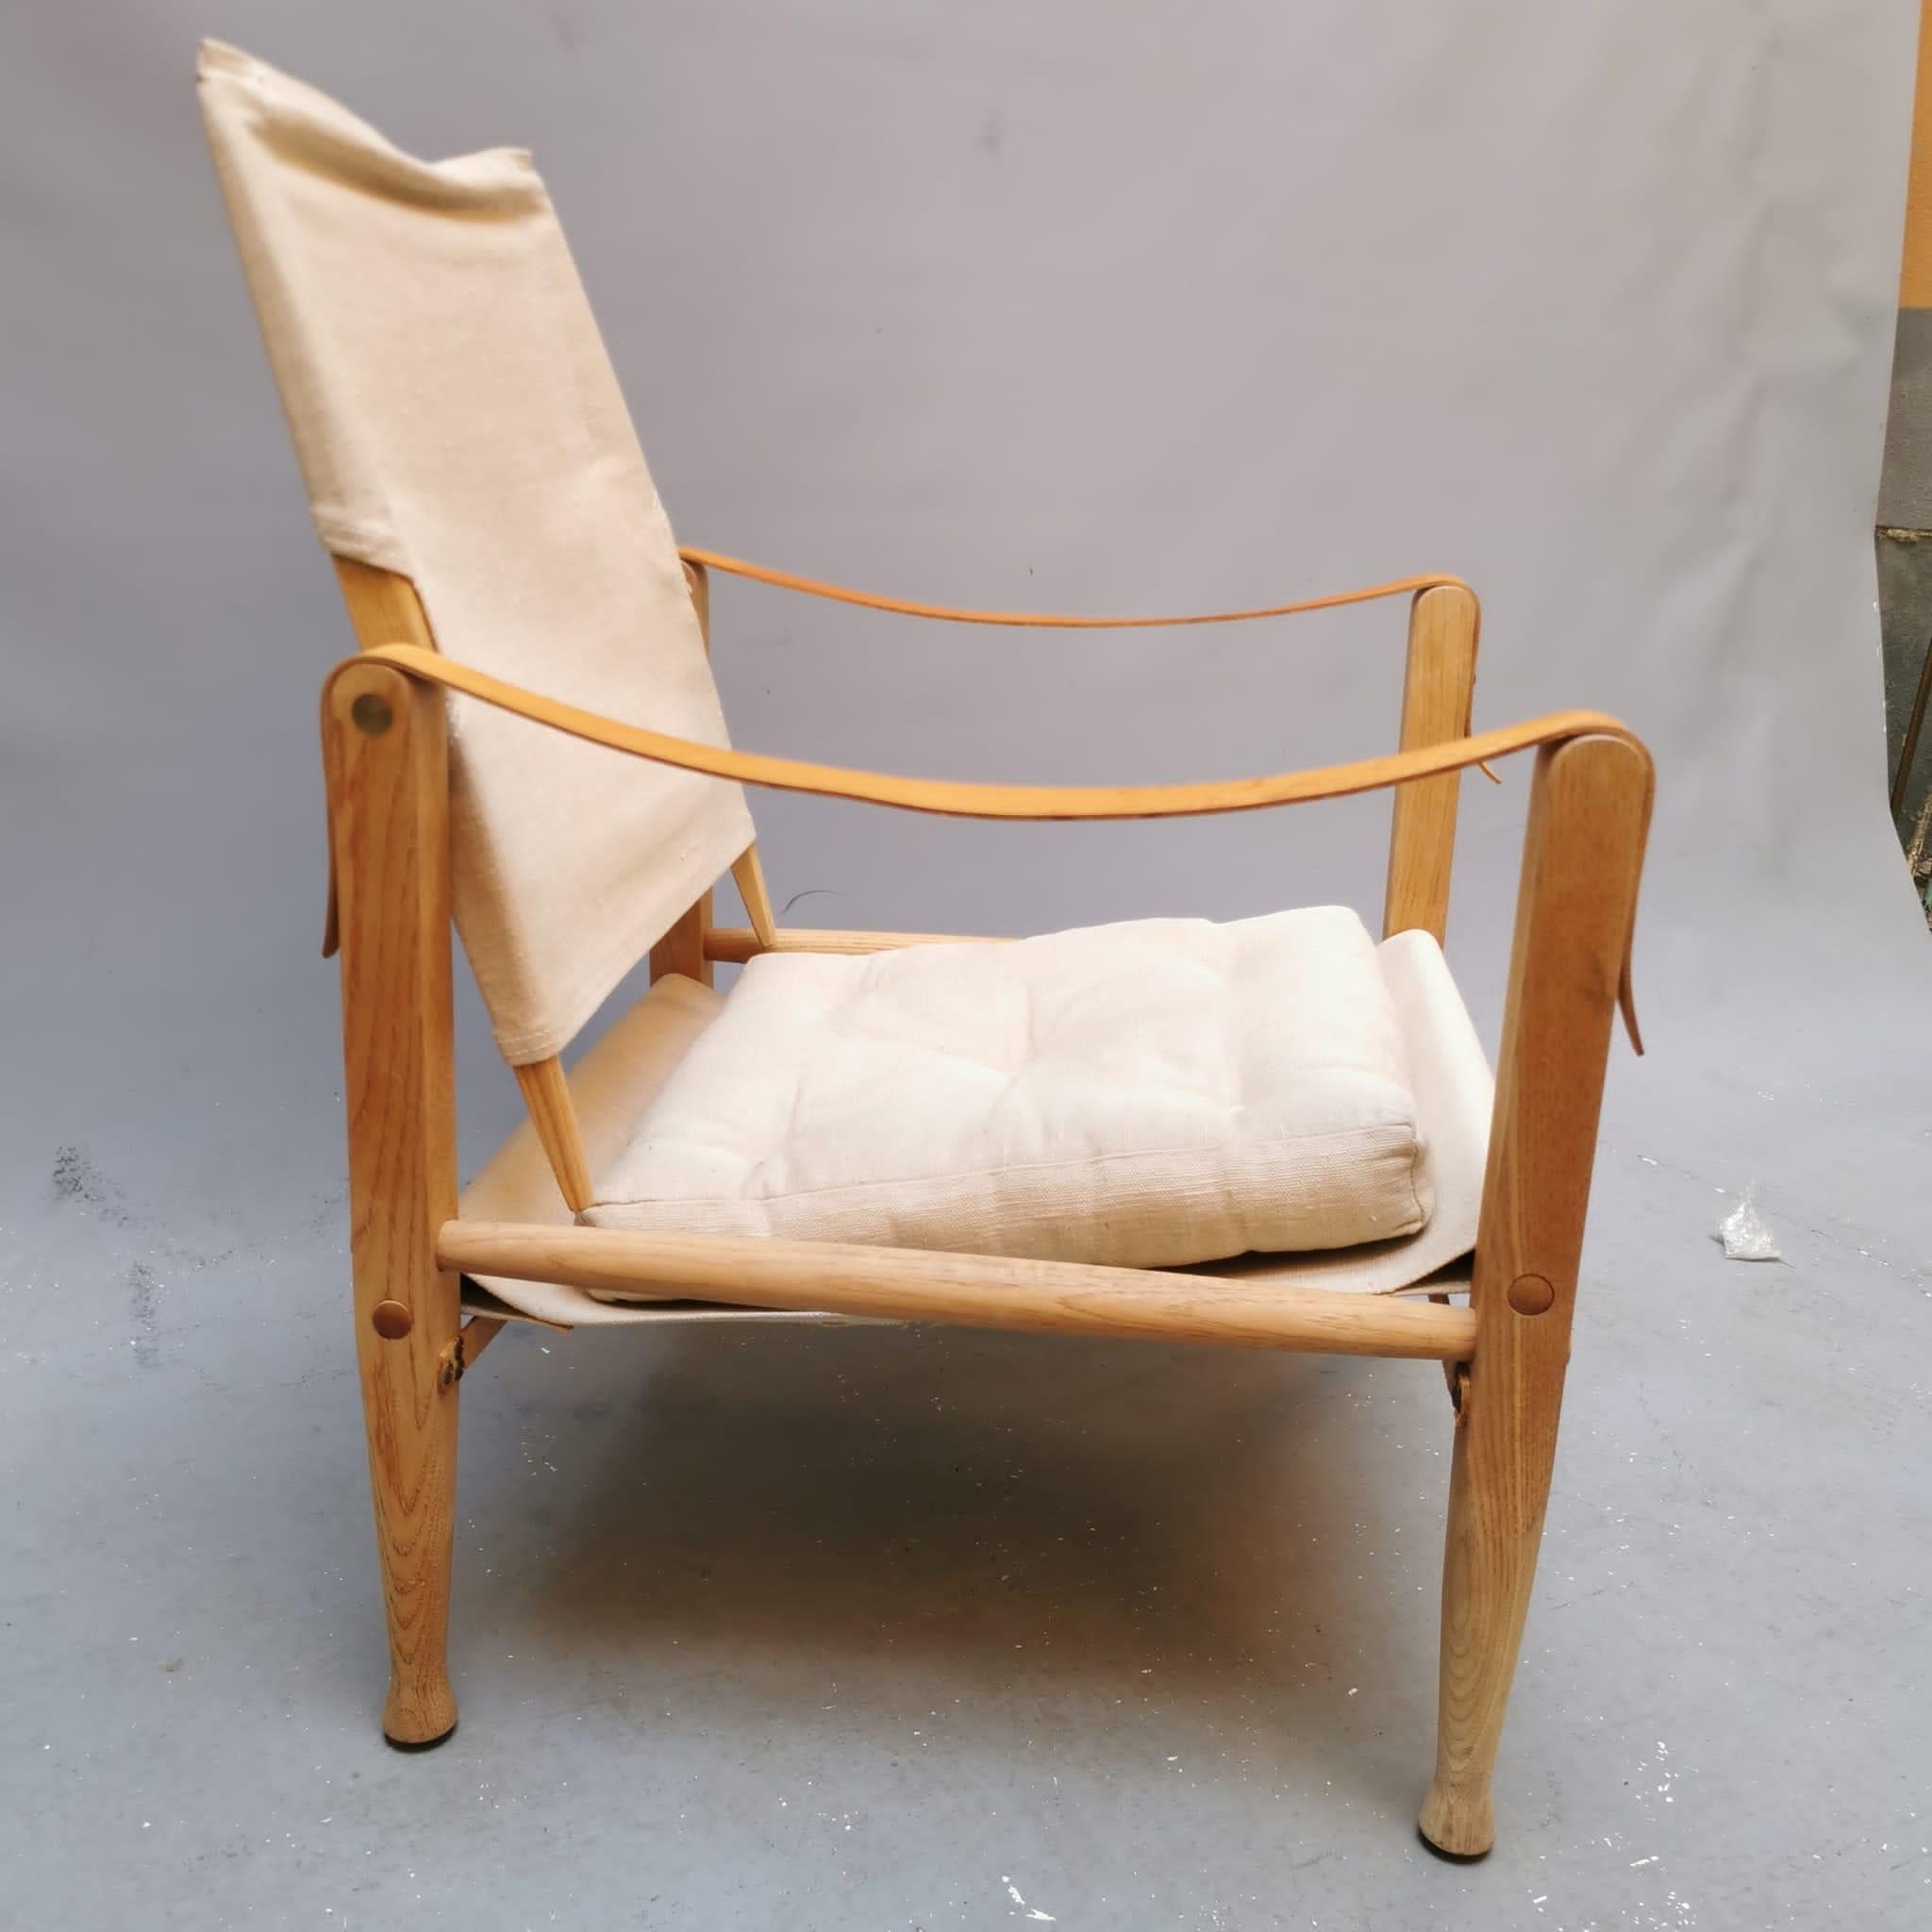 La chaise Safari KK47000 de Kaare Klint est un raffinement des chaises emportées lors d'un safari africain par un cinéaste américain et sa femme. Klint les a remarqués sur les photos du couple. Elles s'inspirent très probablement des chaises